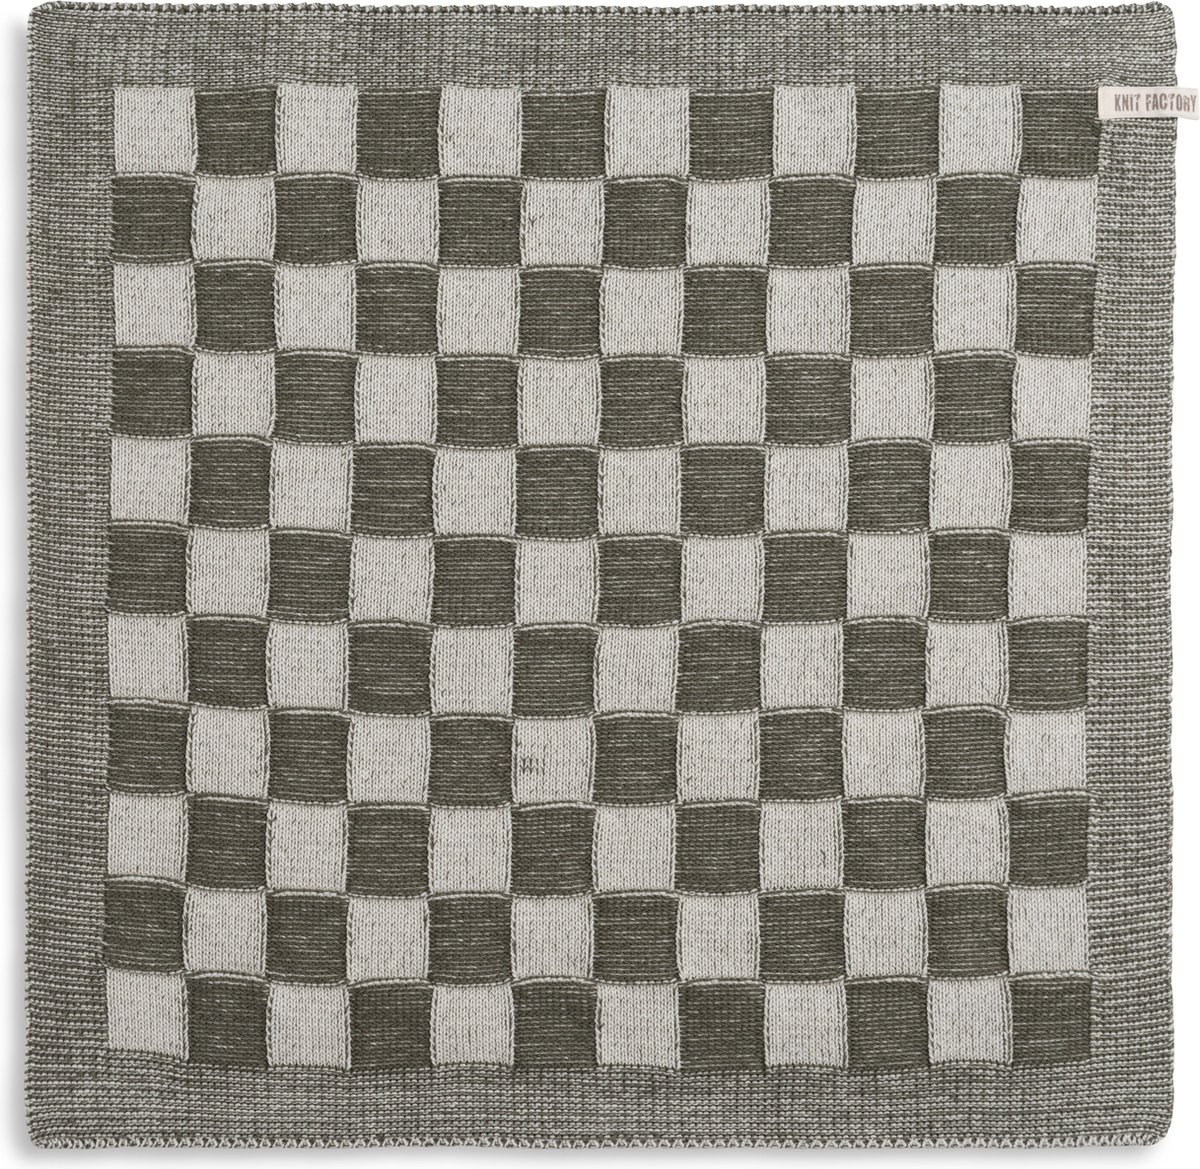 Knit Factory Gebreide Keukendoek - Keukenhanddoek Block - Geblokt motief - Handdoek - Vaatdoek - Keuken doek - Ecru/Khaki - Traditionele look - 50x50 cm